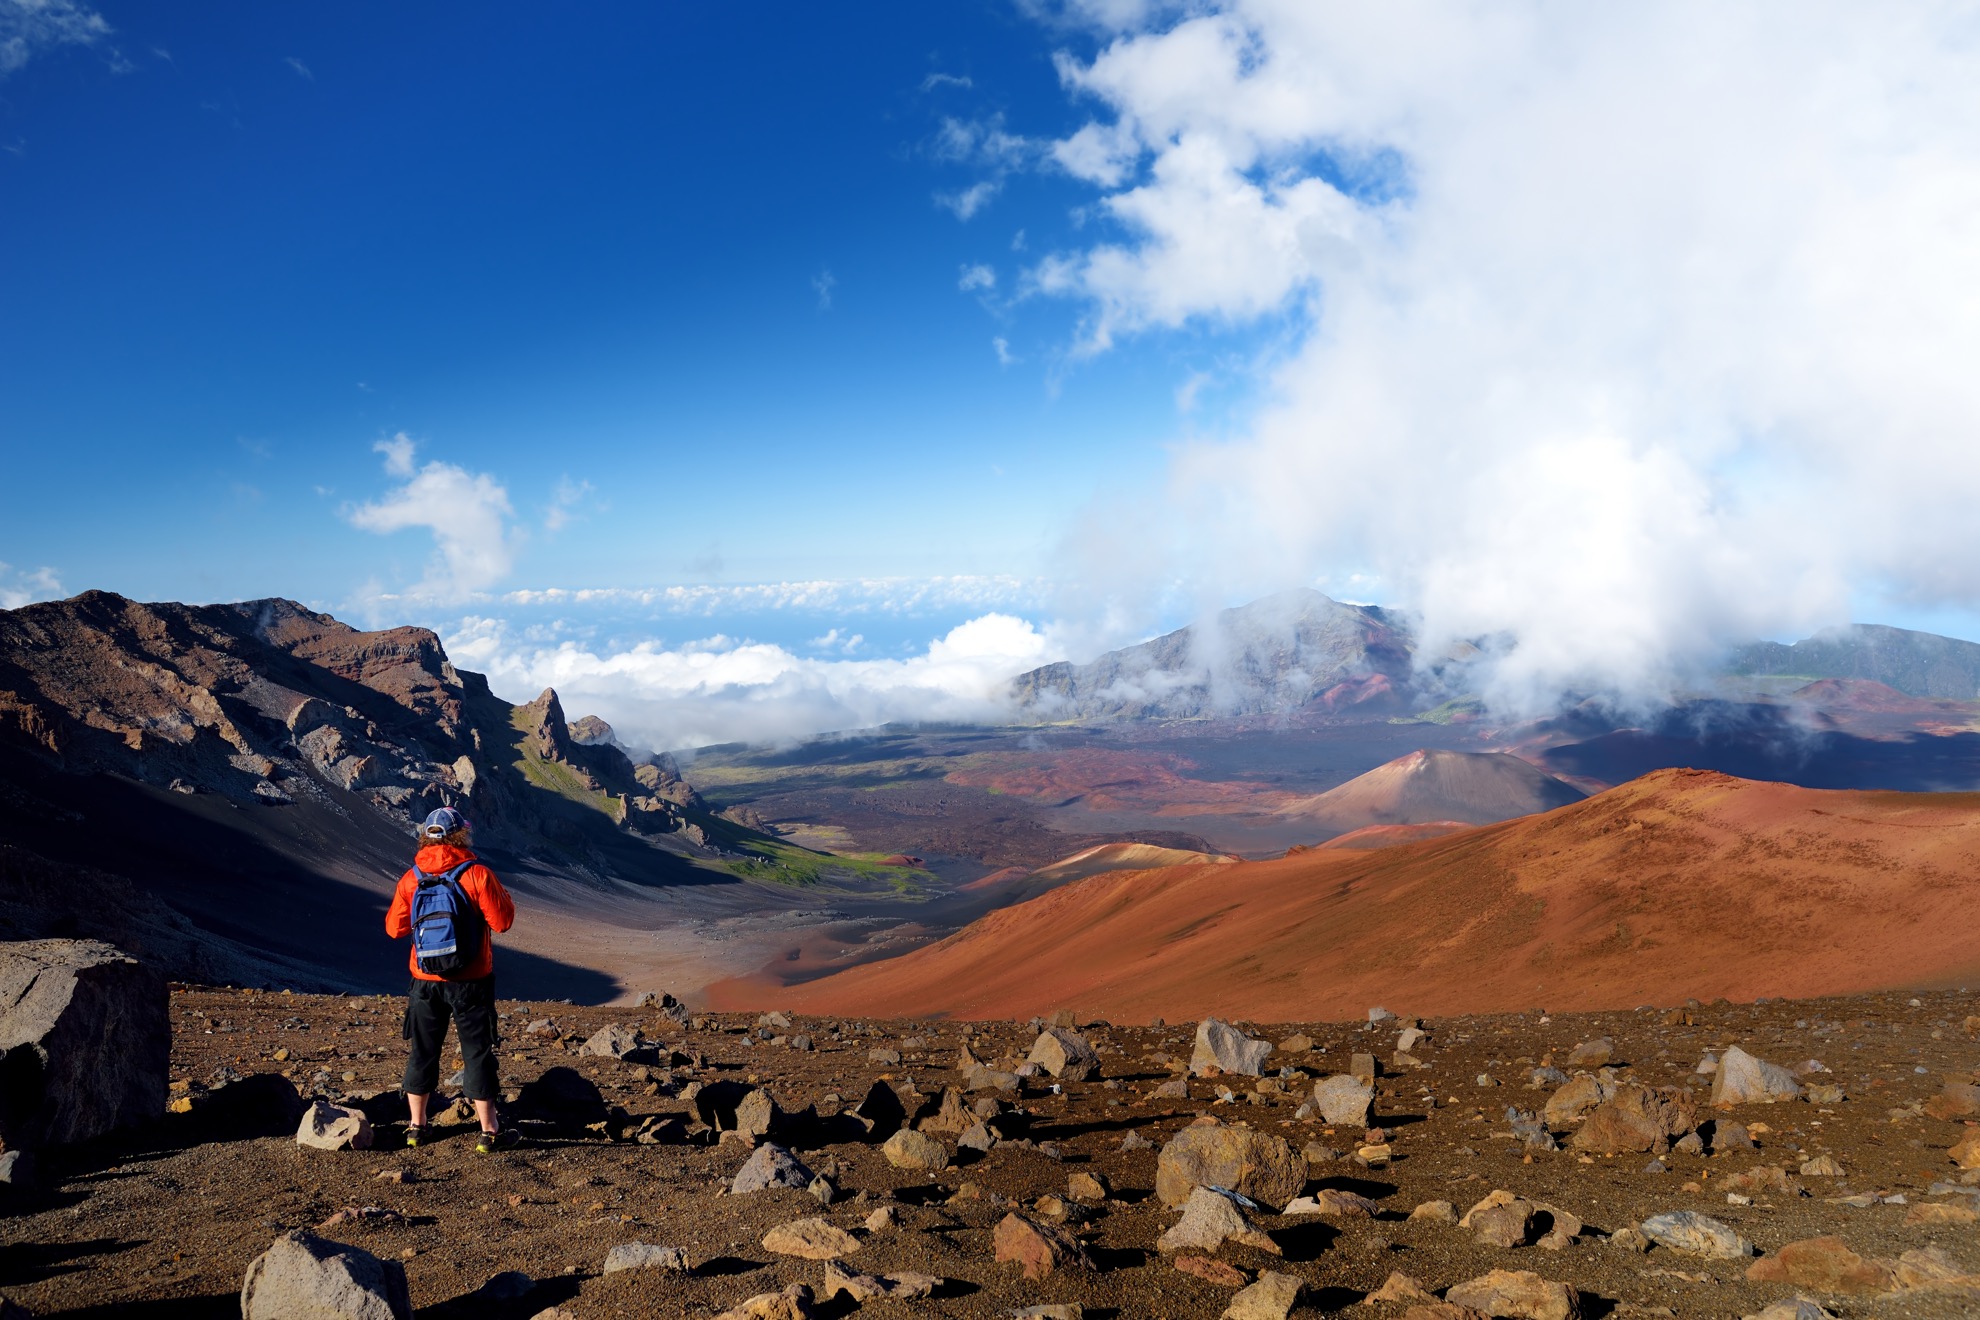 Un día en el Parque Nacional Haleakala, desde el amanecer hasta el atardecer - 9